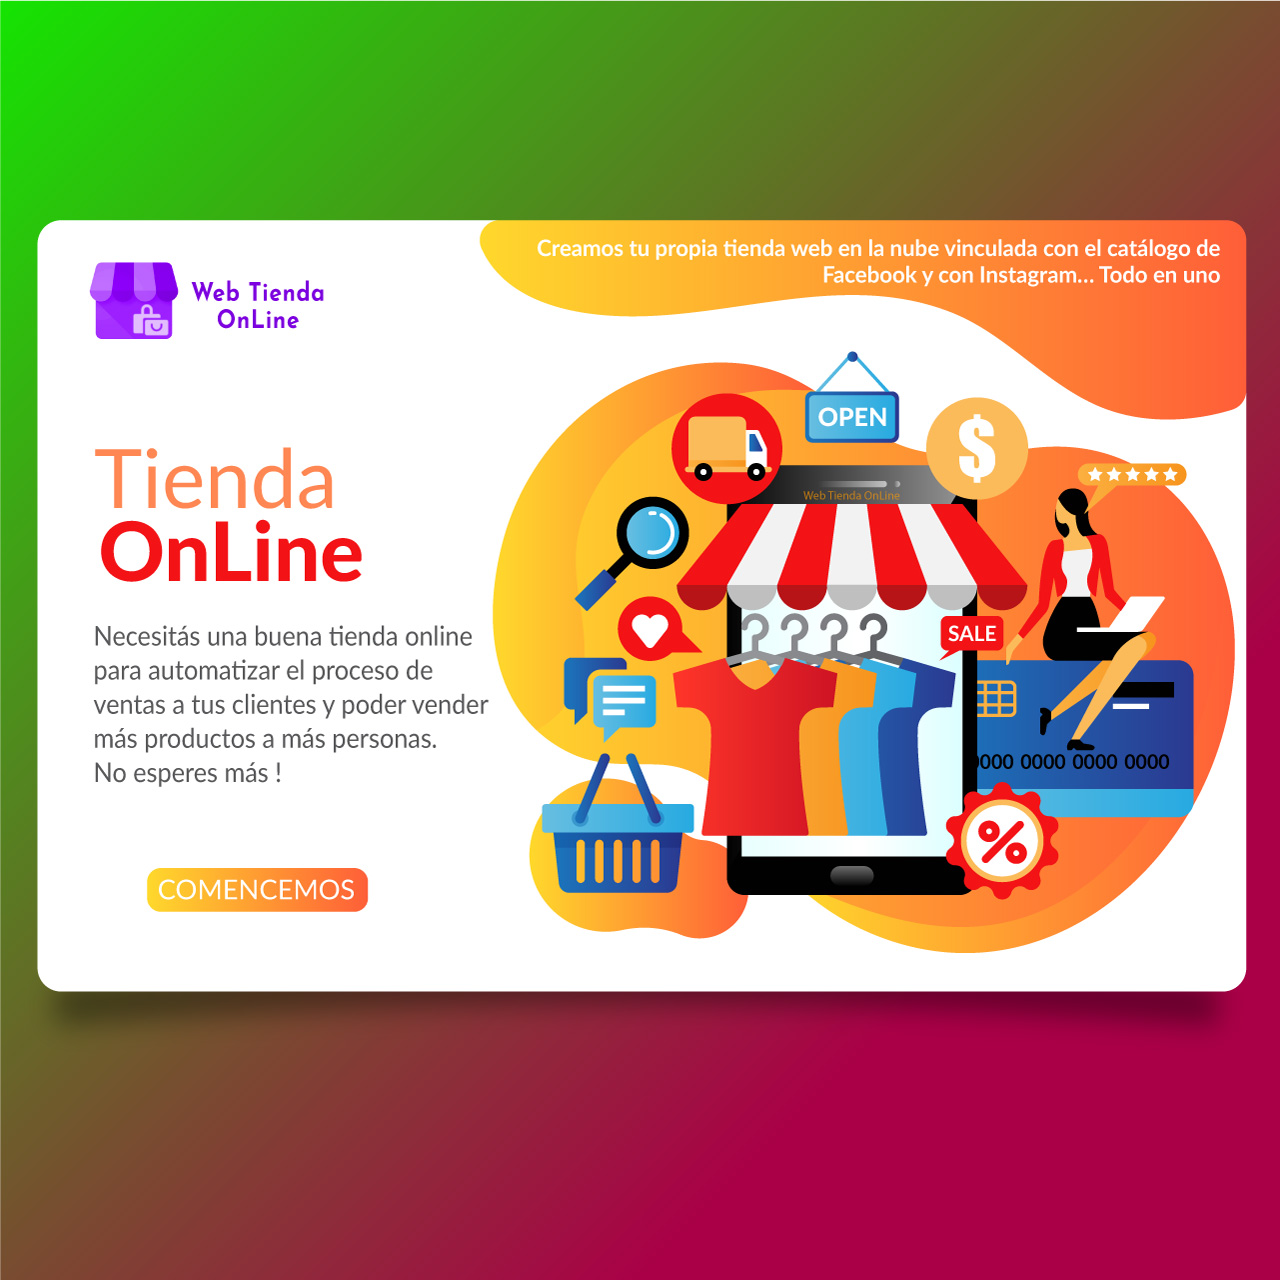 Tienda online perzonalizada a la medida de tu marca - Web Tienda Online Uruguay